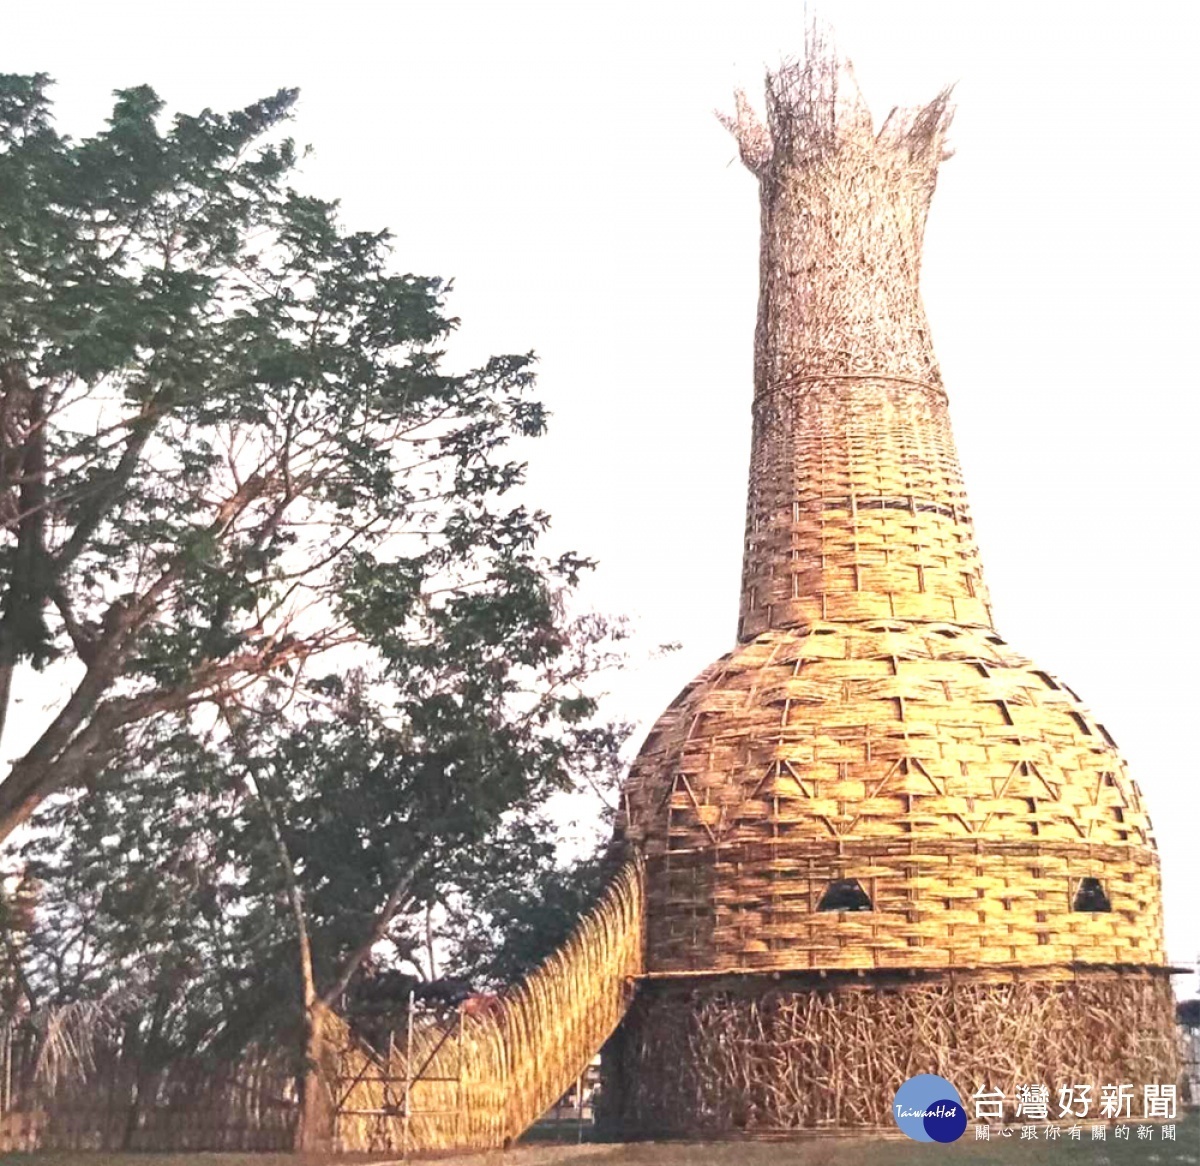 王文志在2007年台灣燈會時，為主辦單位嘉義縣政府打造27公尺高的地景藝術「森林高塔」／陳致愷翻攝